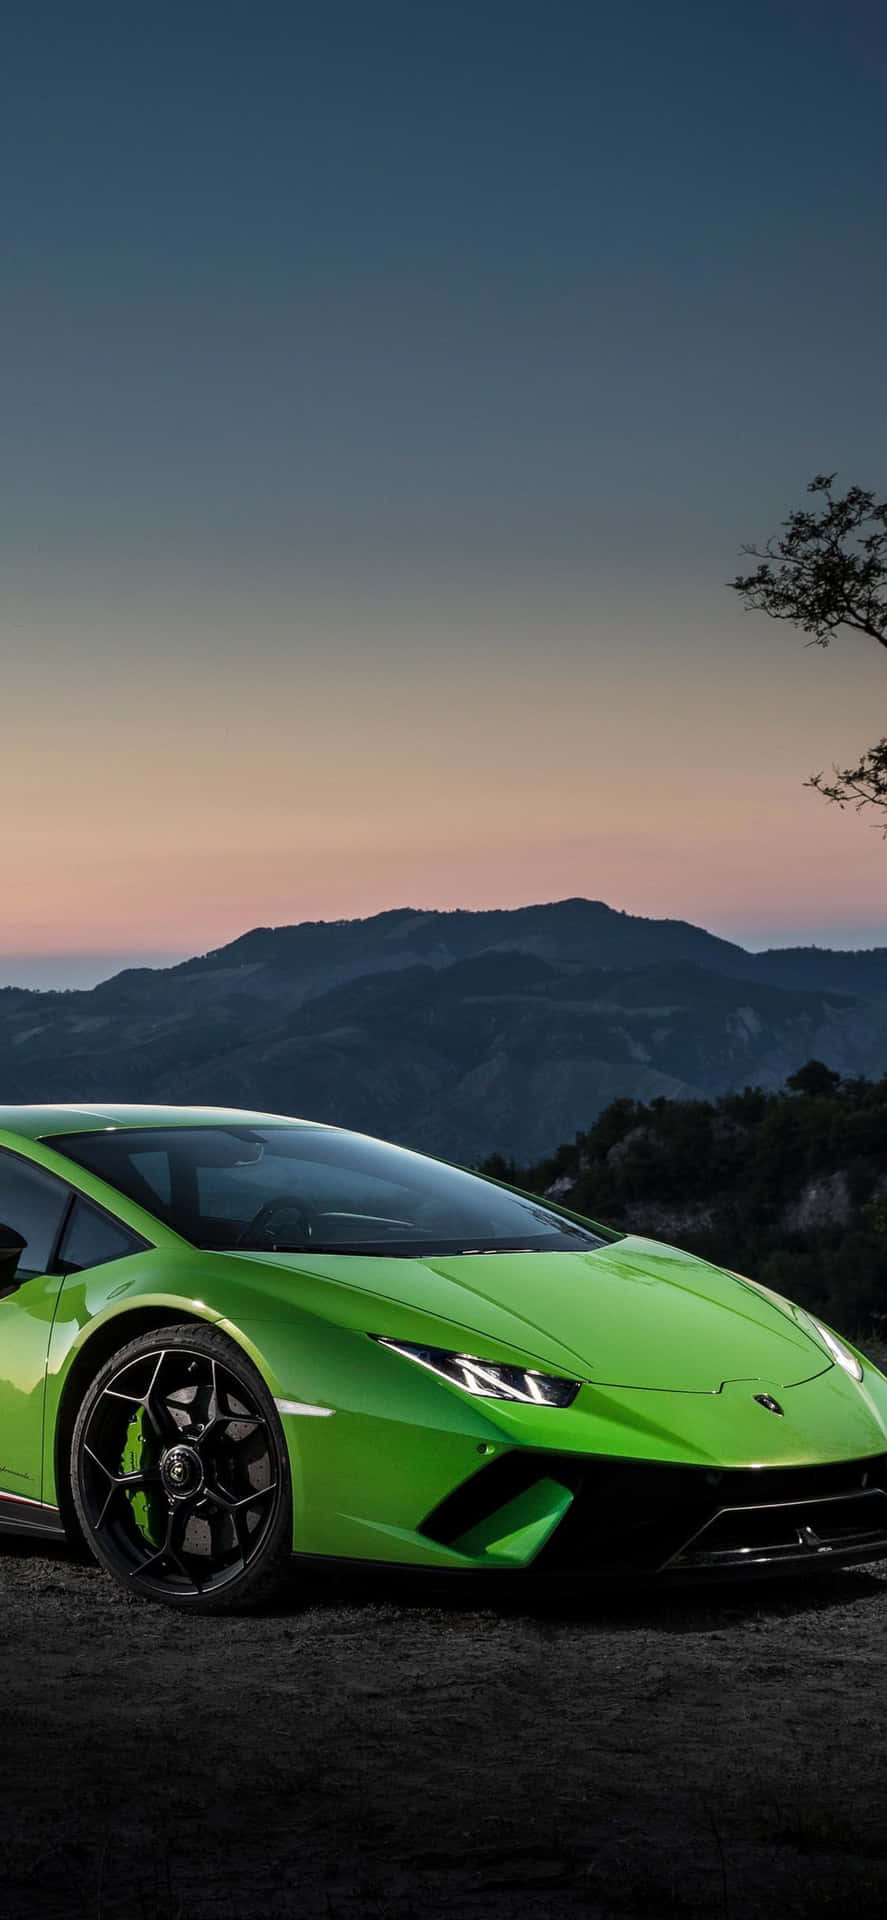 Iphonexs Bakgrundsbild Med Need For Speed Payback I Ljusgrönt Och En 2018 Lamborghini Huracan.